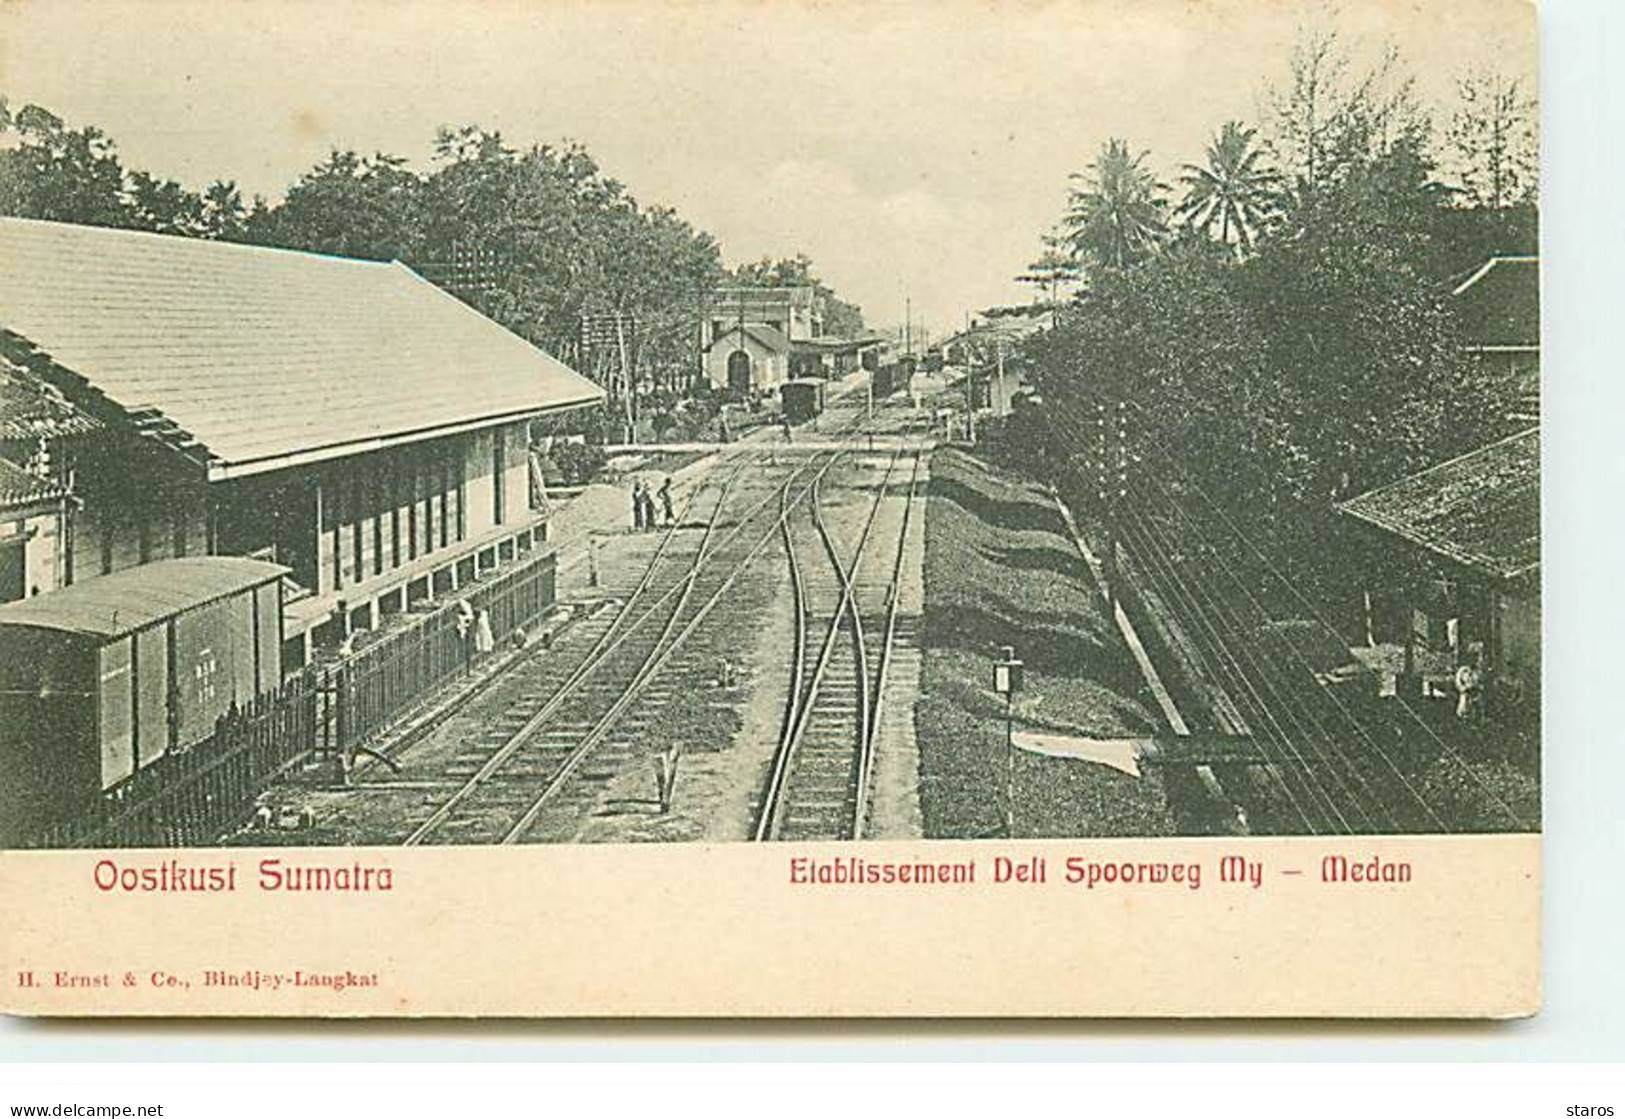 Indonésie - Oostkust Sumatra - Etablissement Deli Spoorweg My - Medan - Bahnhof - Gare - Indonesien